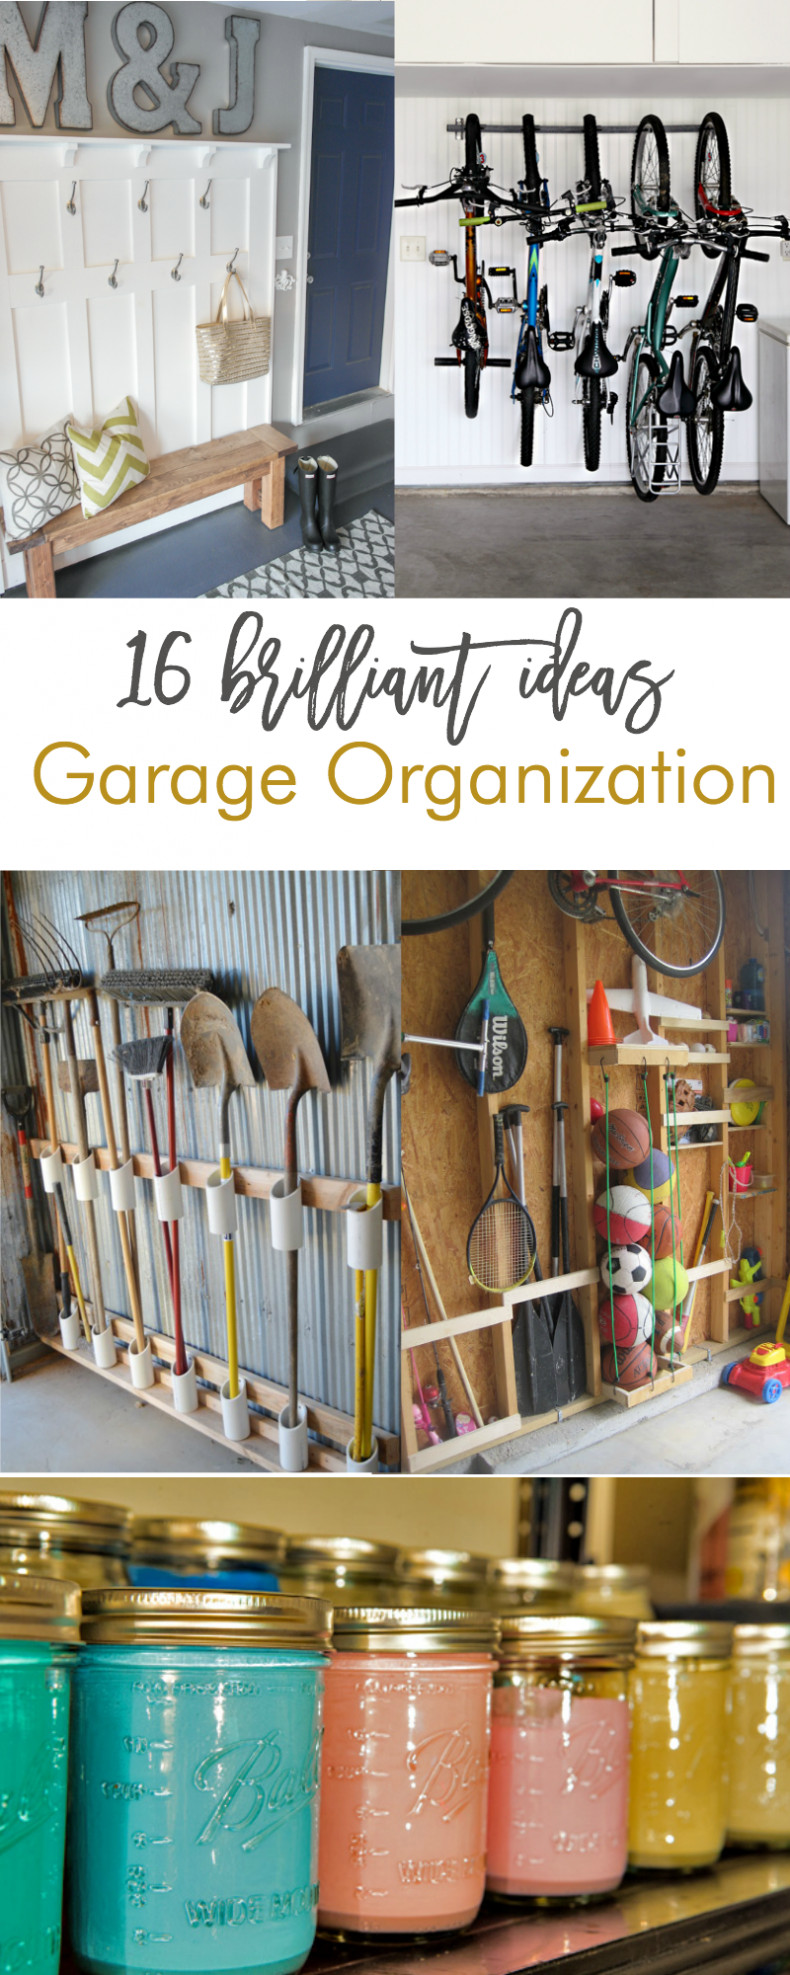 Garage Organizing Plans
 16 Brilliant DIY Garage Organization Ideas